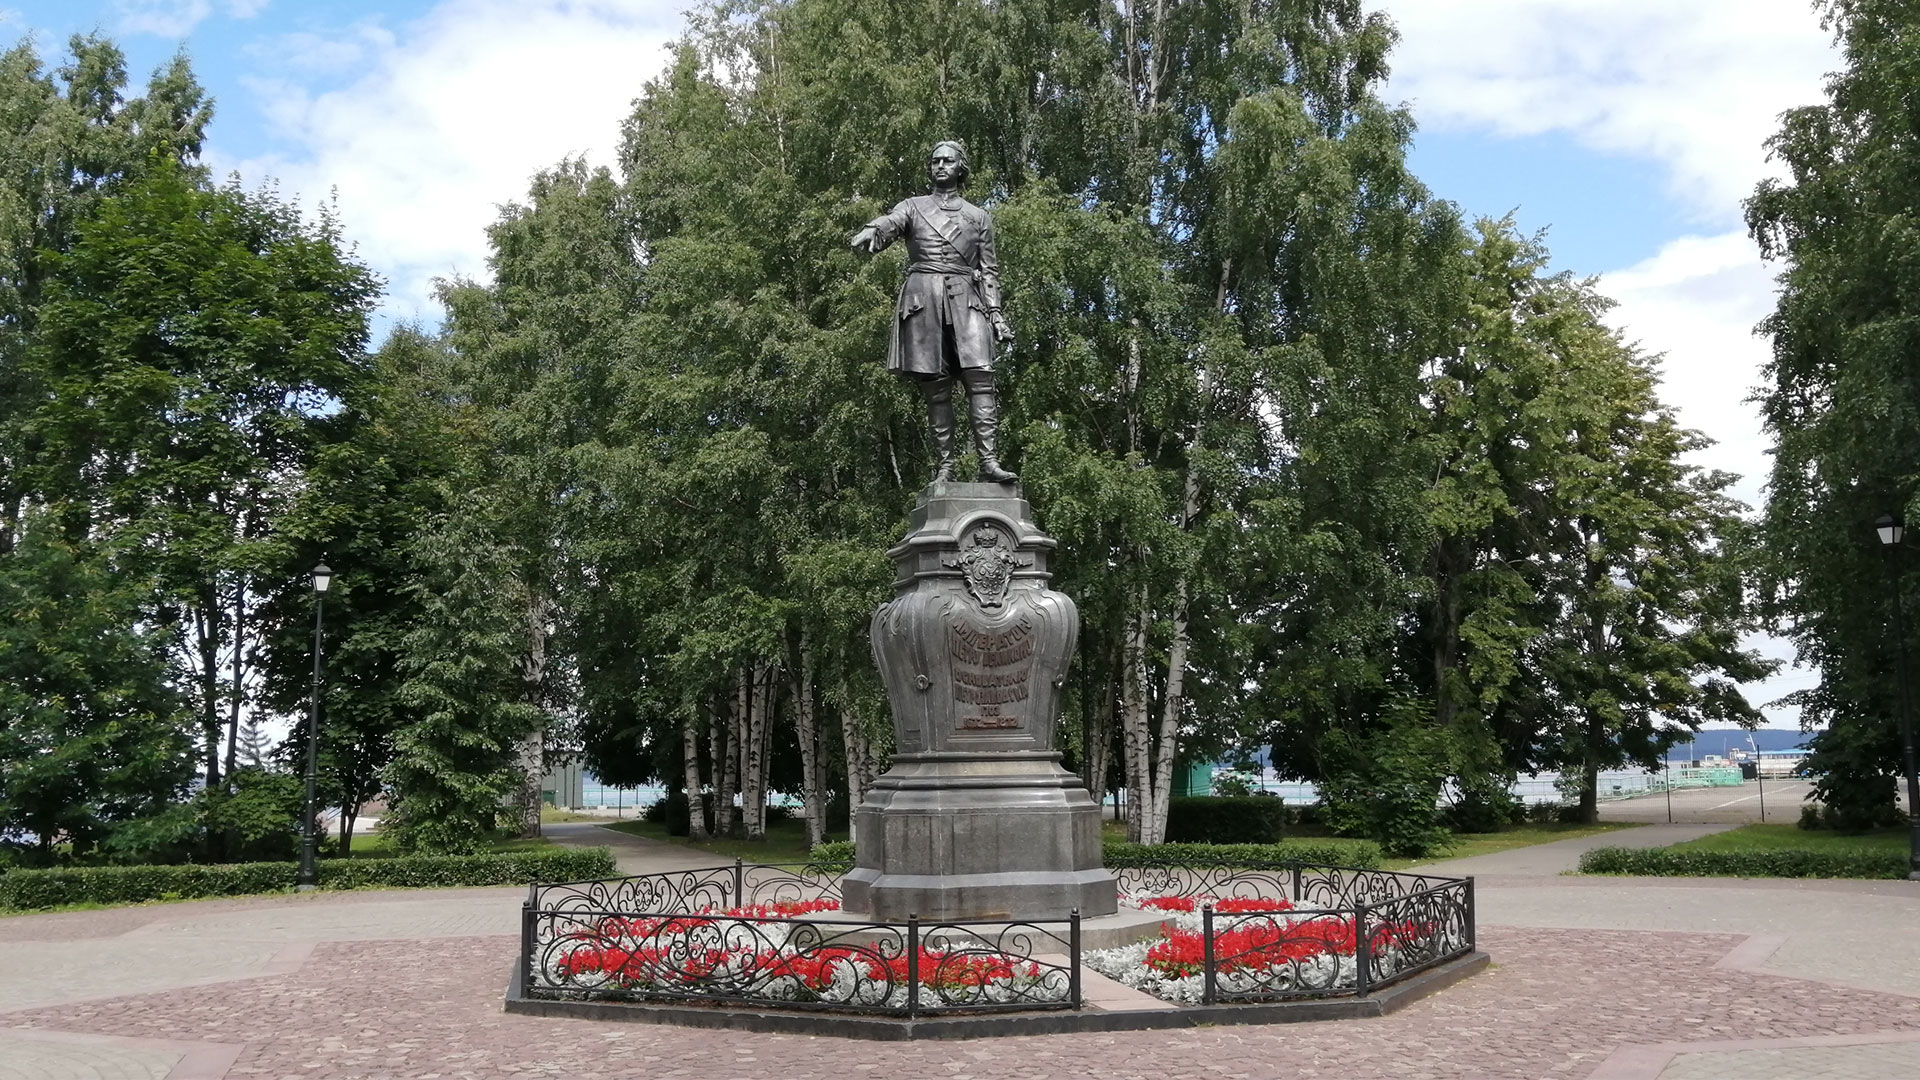 Скульптура Петра I на постаменте обрамлённом цветником и оградой на мощёной площадке в парке.